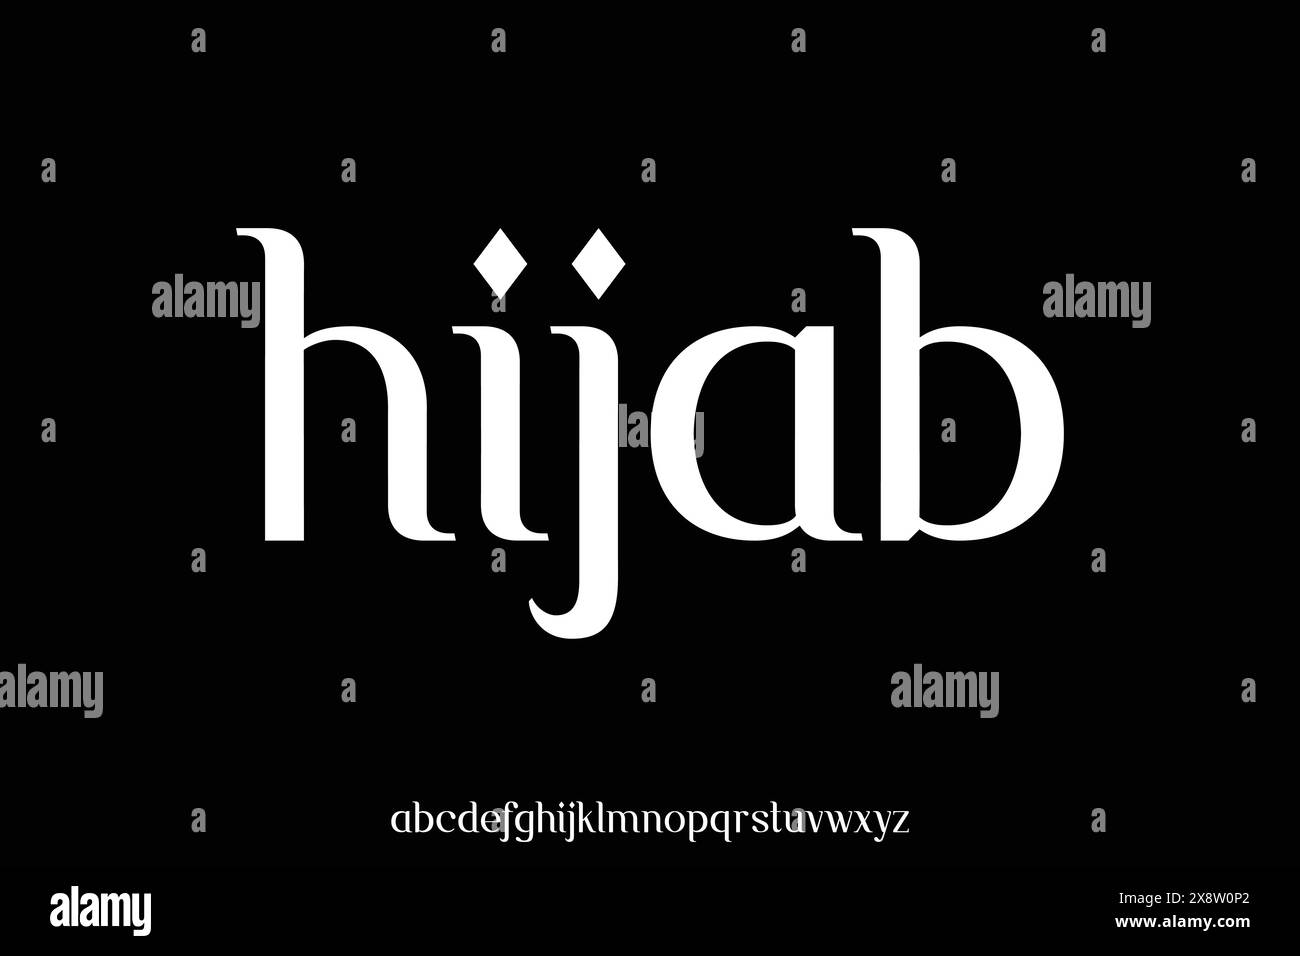 Elegante arabische Schrift-Vektor-Illustration Stock Vektor